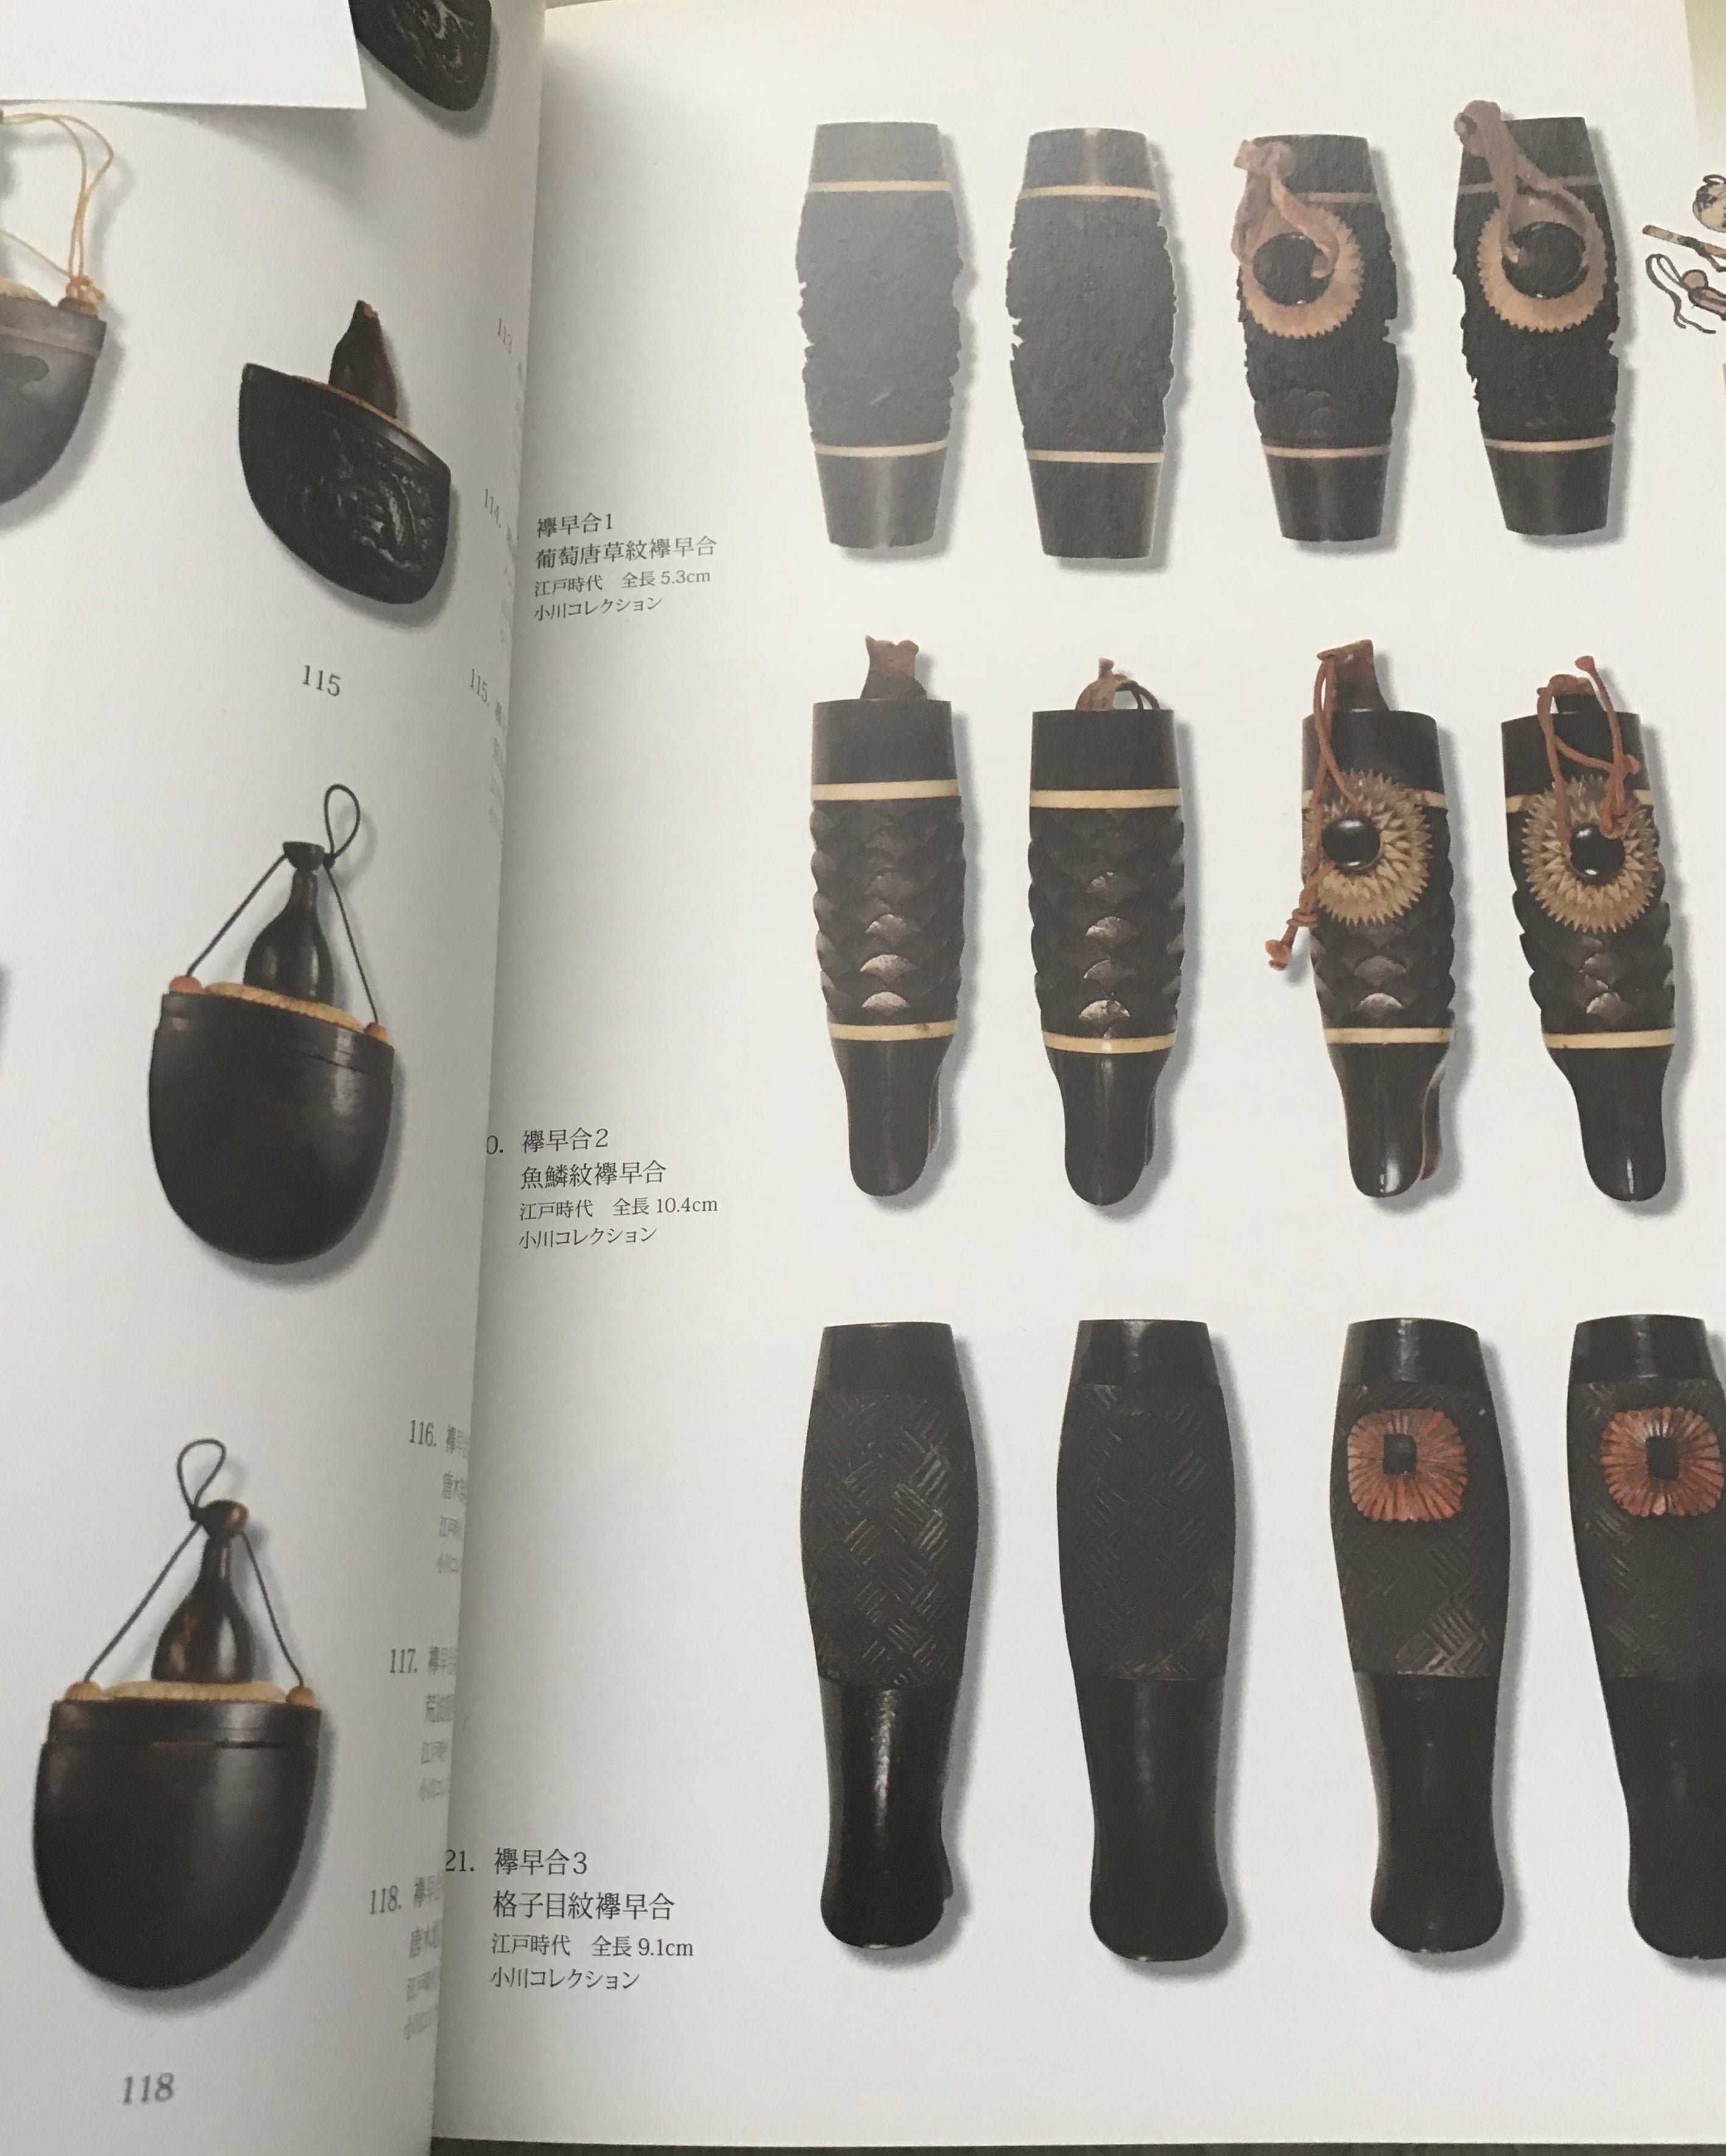 Japanese matchlock accessories - Yamazakura